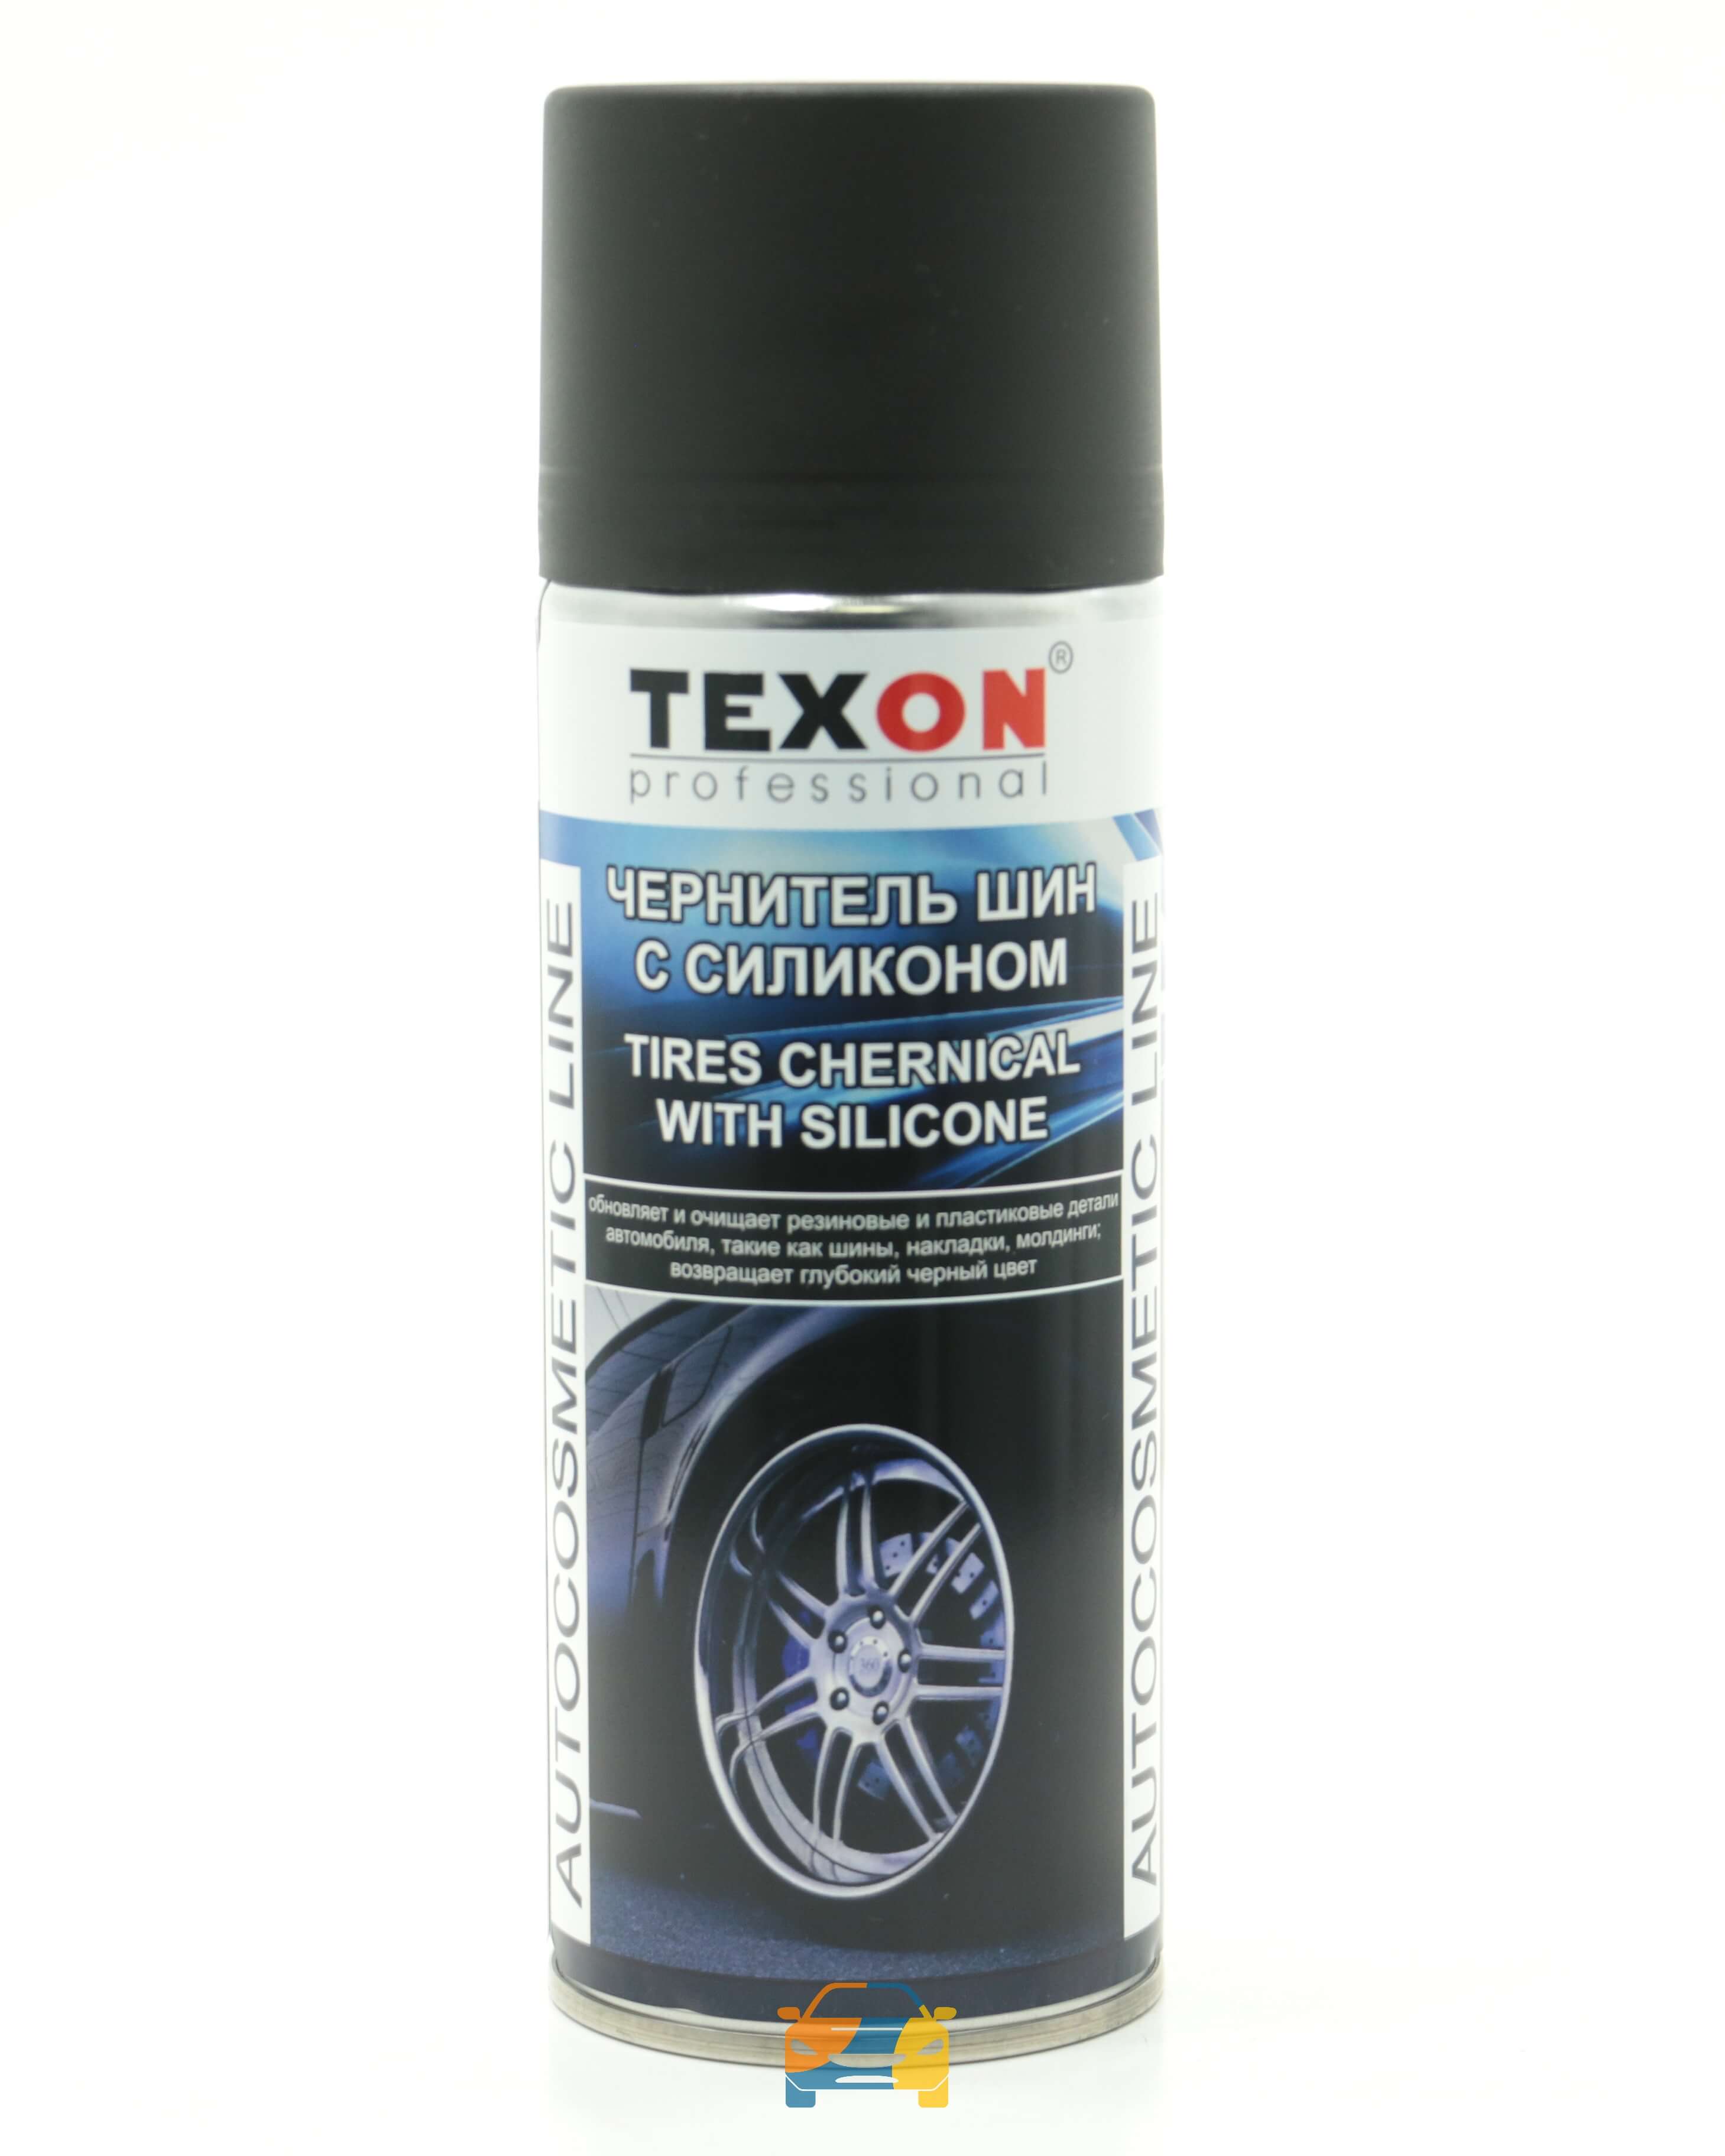 Спрей чернитель шин с силиконом Texon